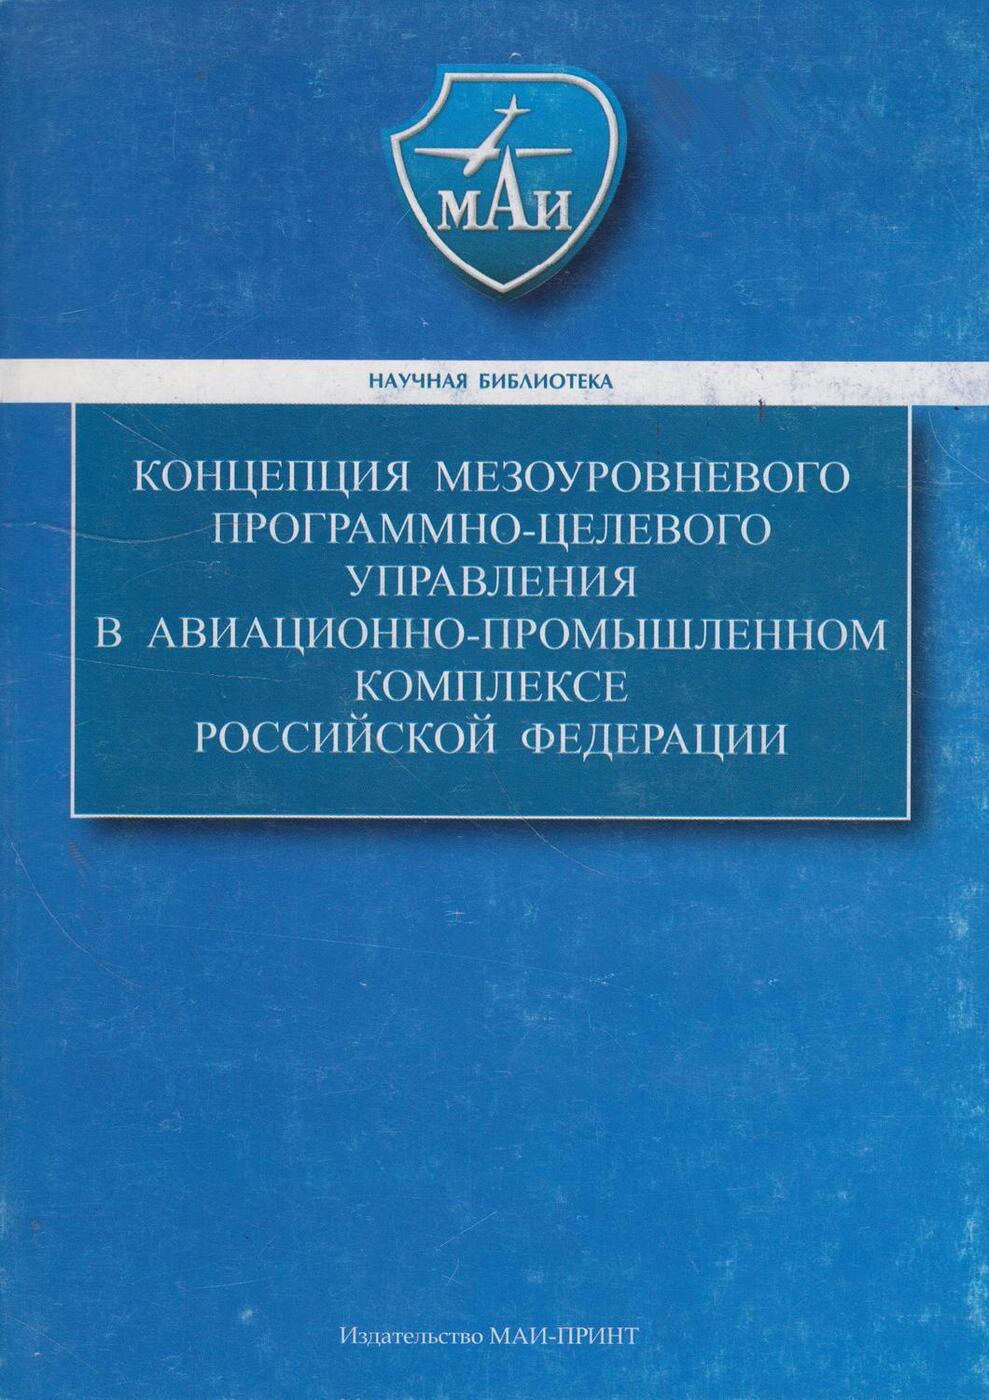 Концепция мезоуровневого программно-целевого управления в авиационно-промышленном комплексе Российской Федерации